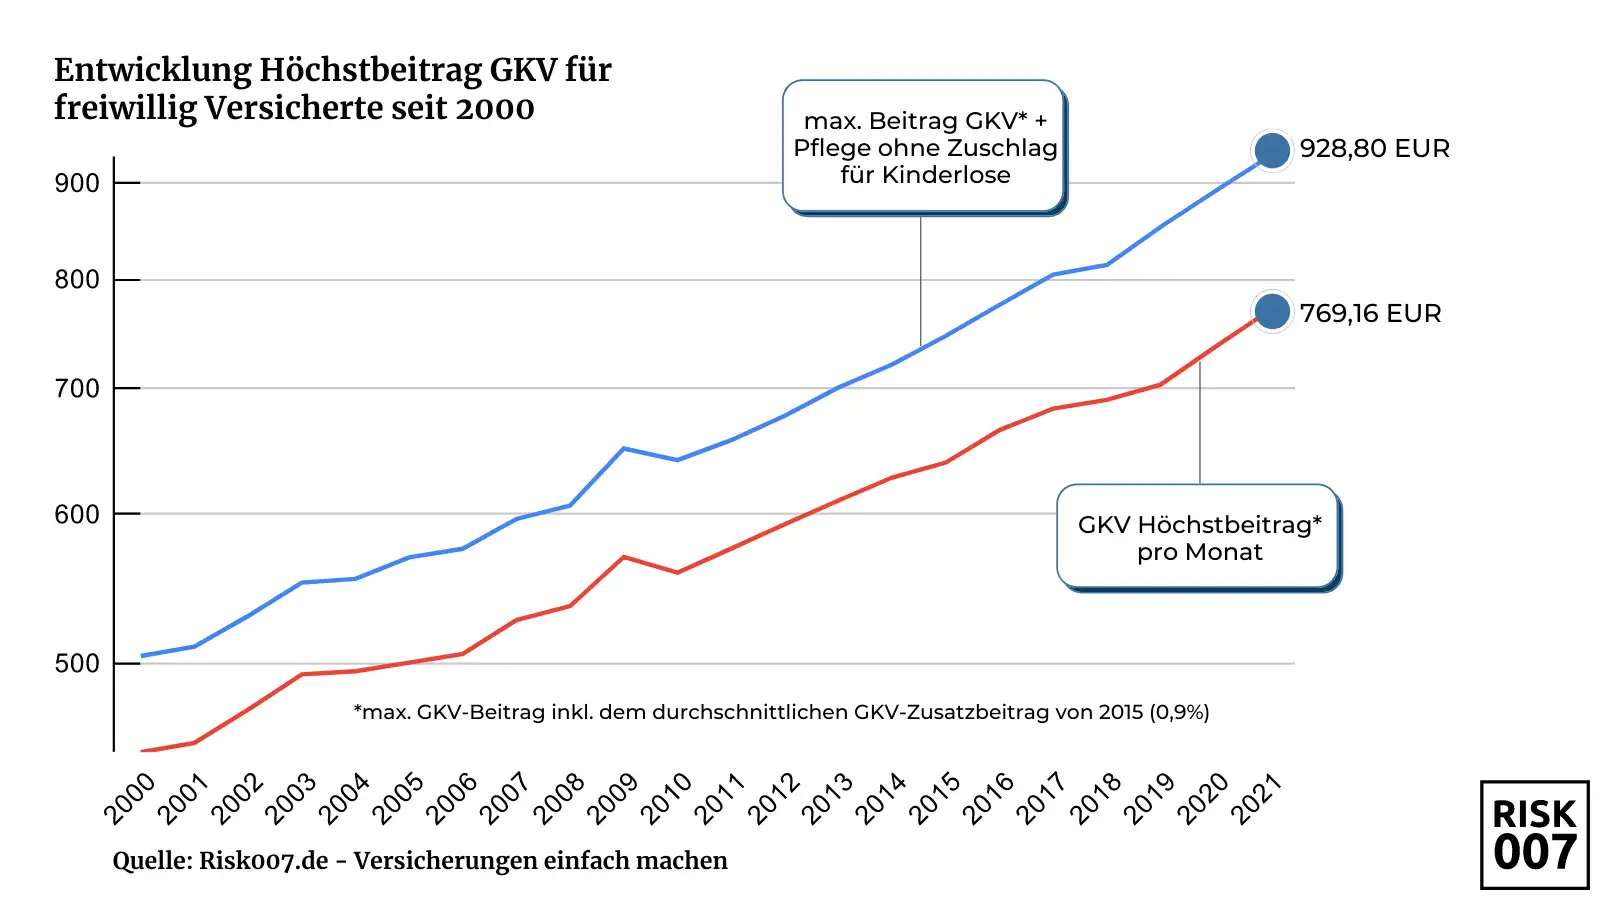 Leistungskürzungen und Beitragsentwicklung GKV seit 2000